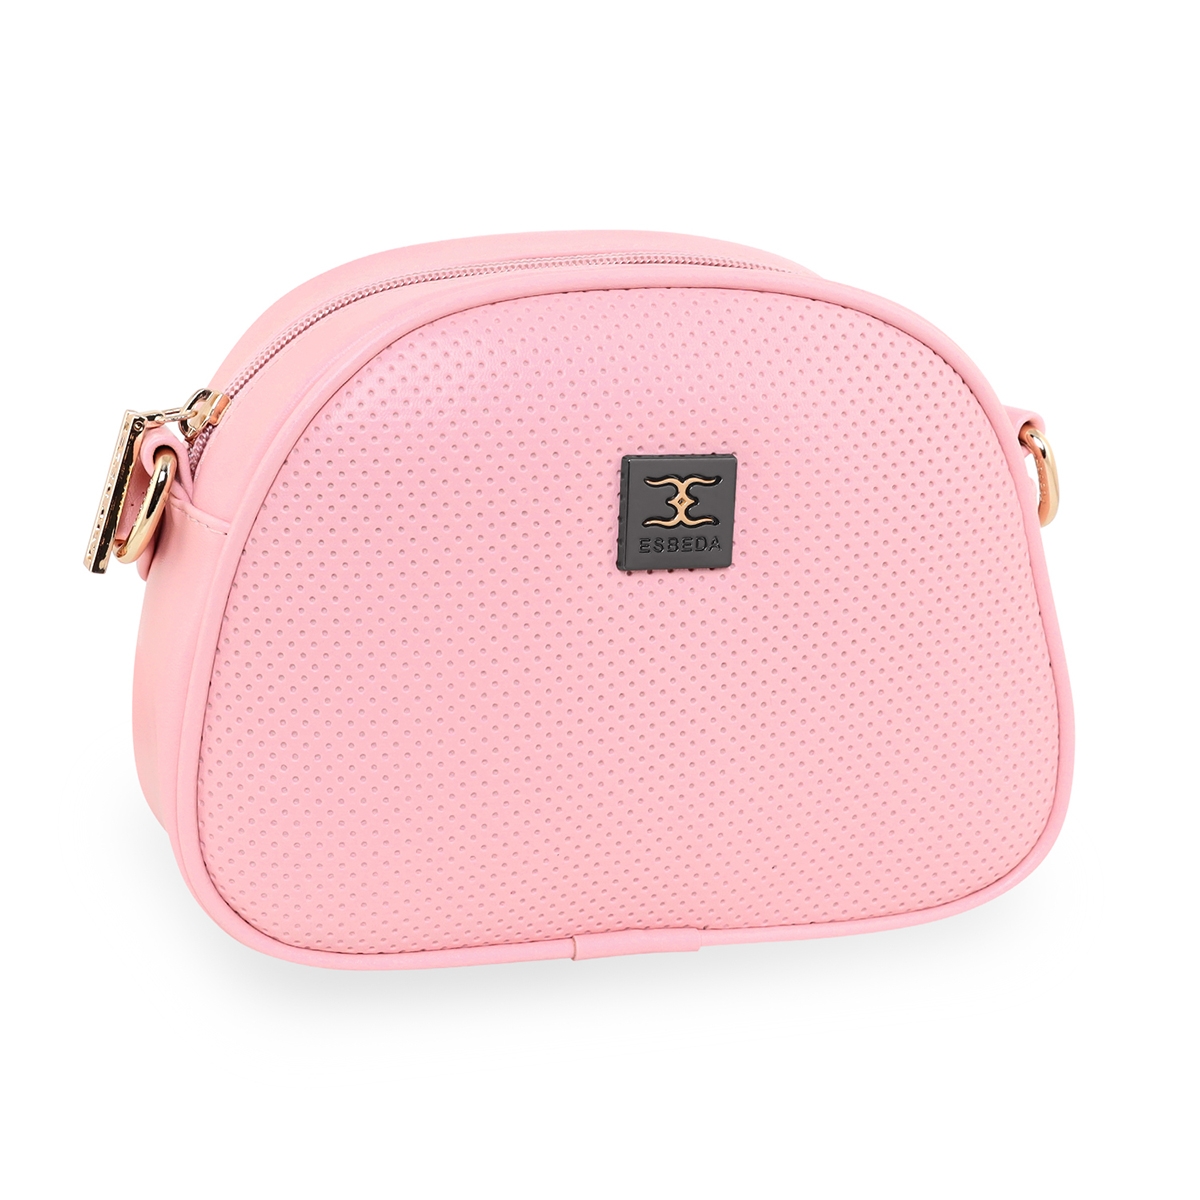 ESBEDA | Women's Pink PU Solid Sling Bags 7